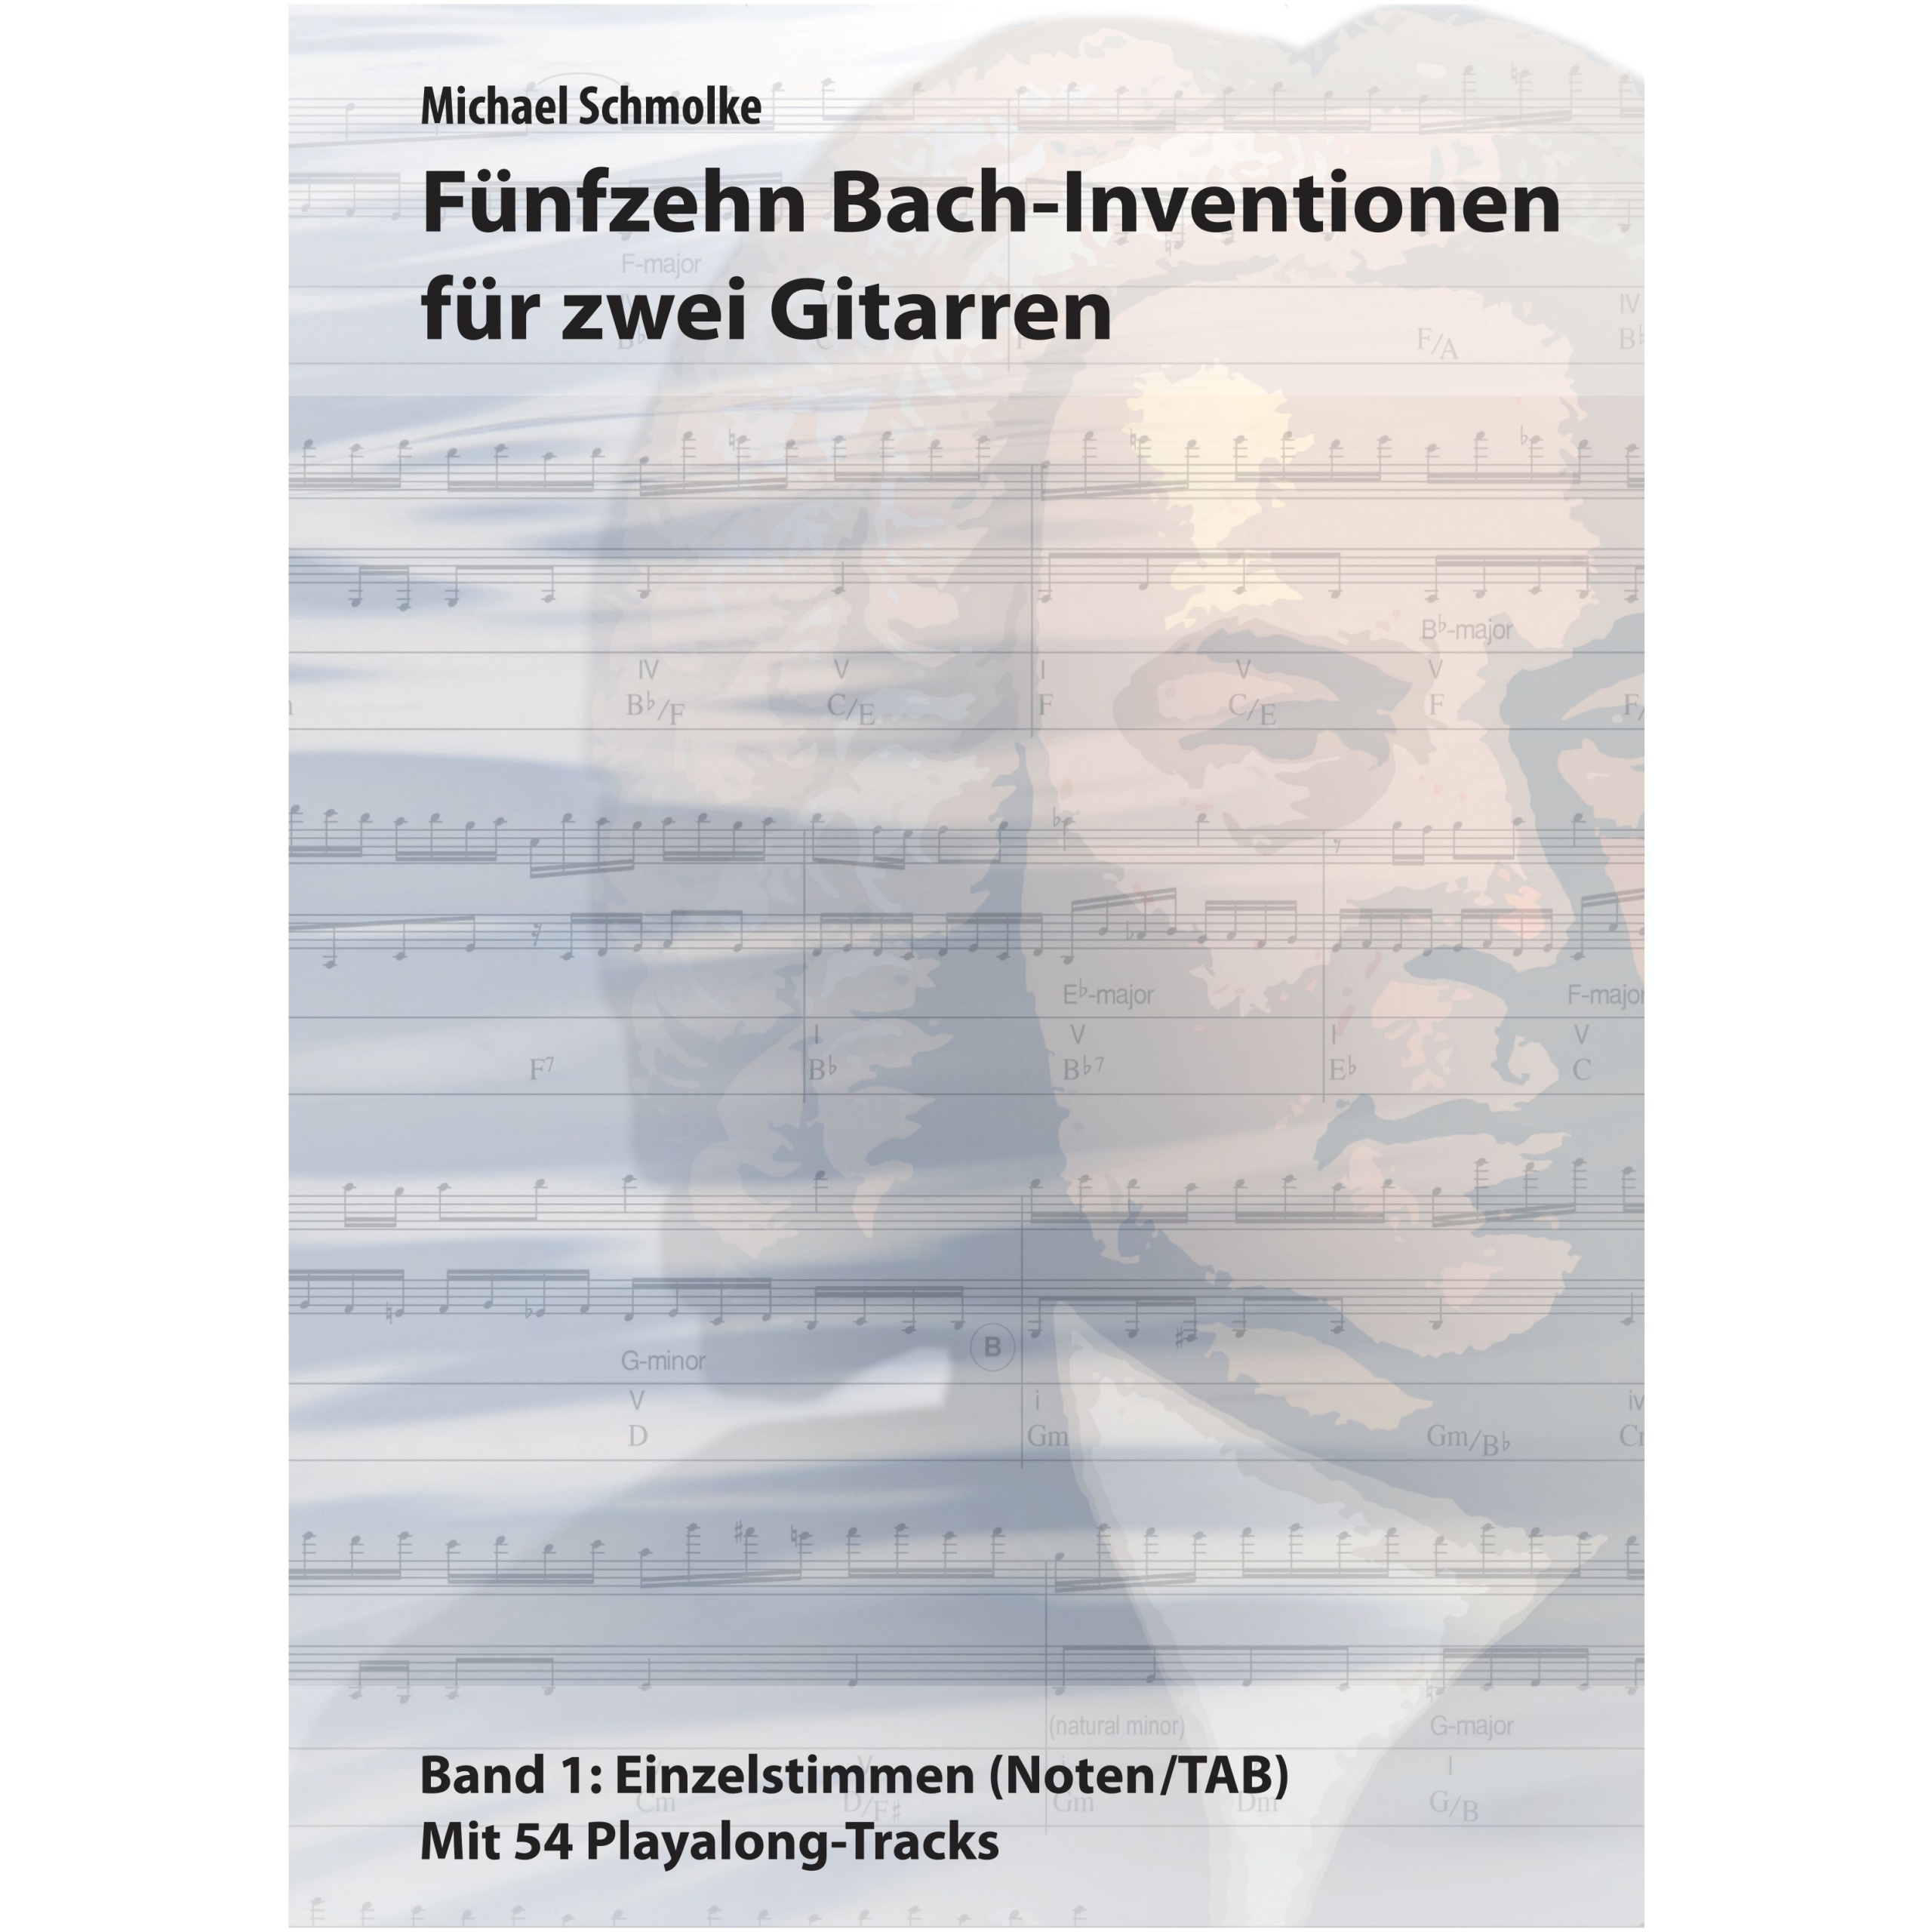 Michael Schmolke: 15 Bach-Inventionen für zwei Gitarren Bd. 1. Buchcover-Vorderseite. SPASS BEISAITE Musikverlag